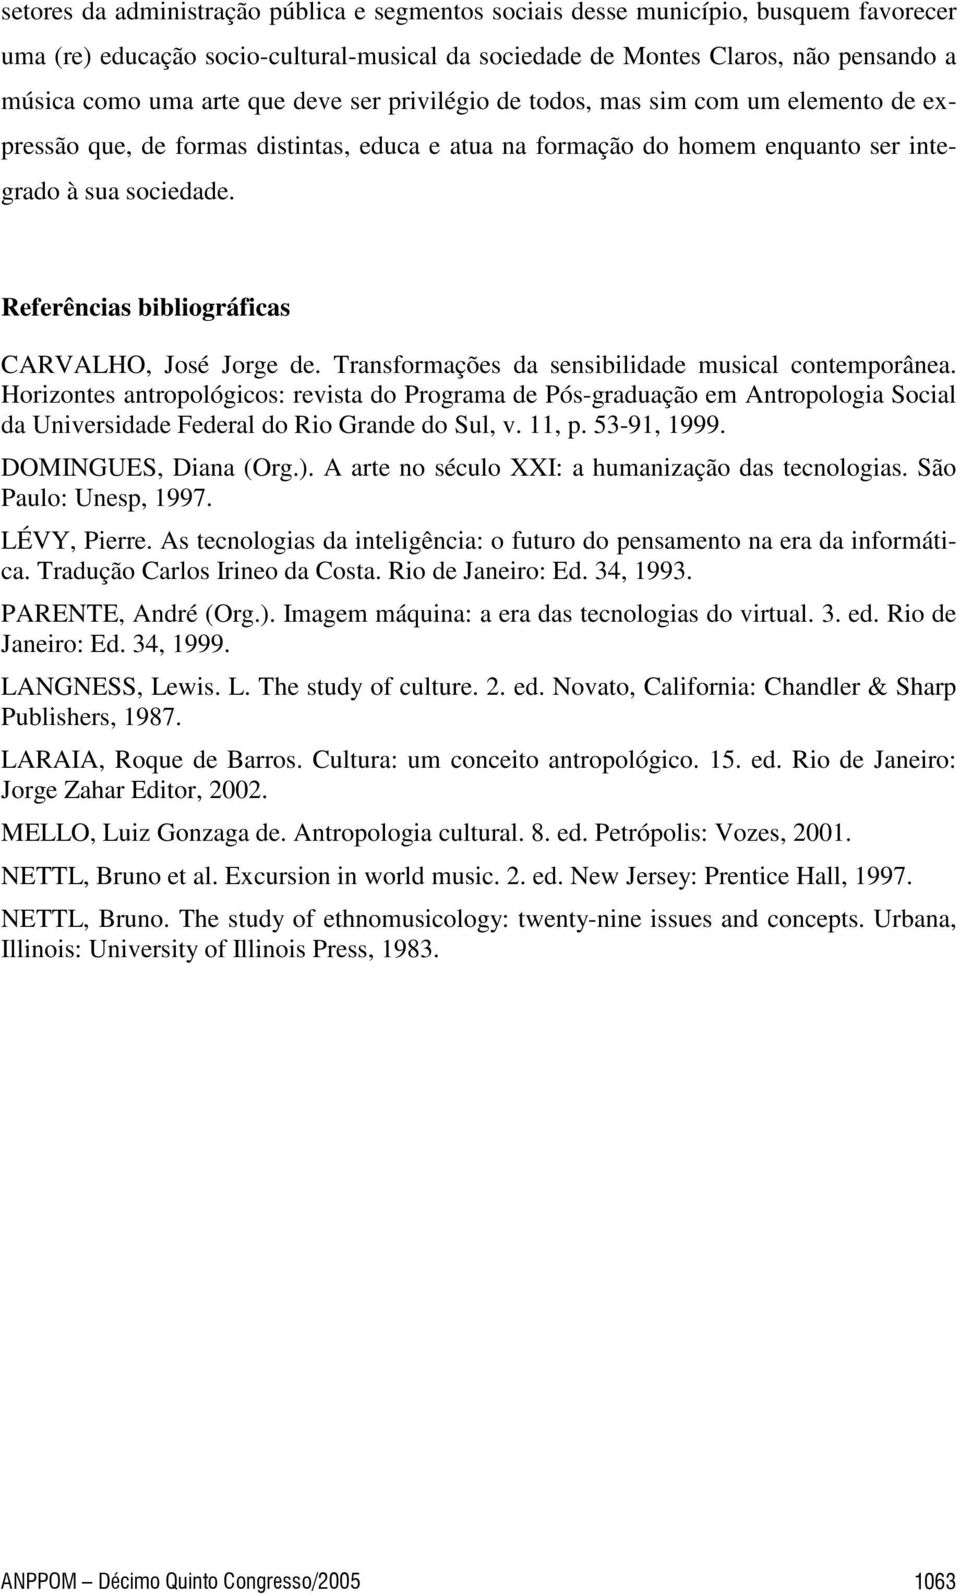 Referências bibliográficas CARVALHO, José Jorge de. Transformações da sensibilidade musical contemporânea.